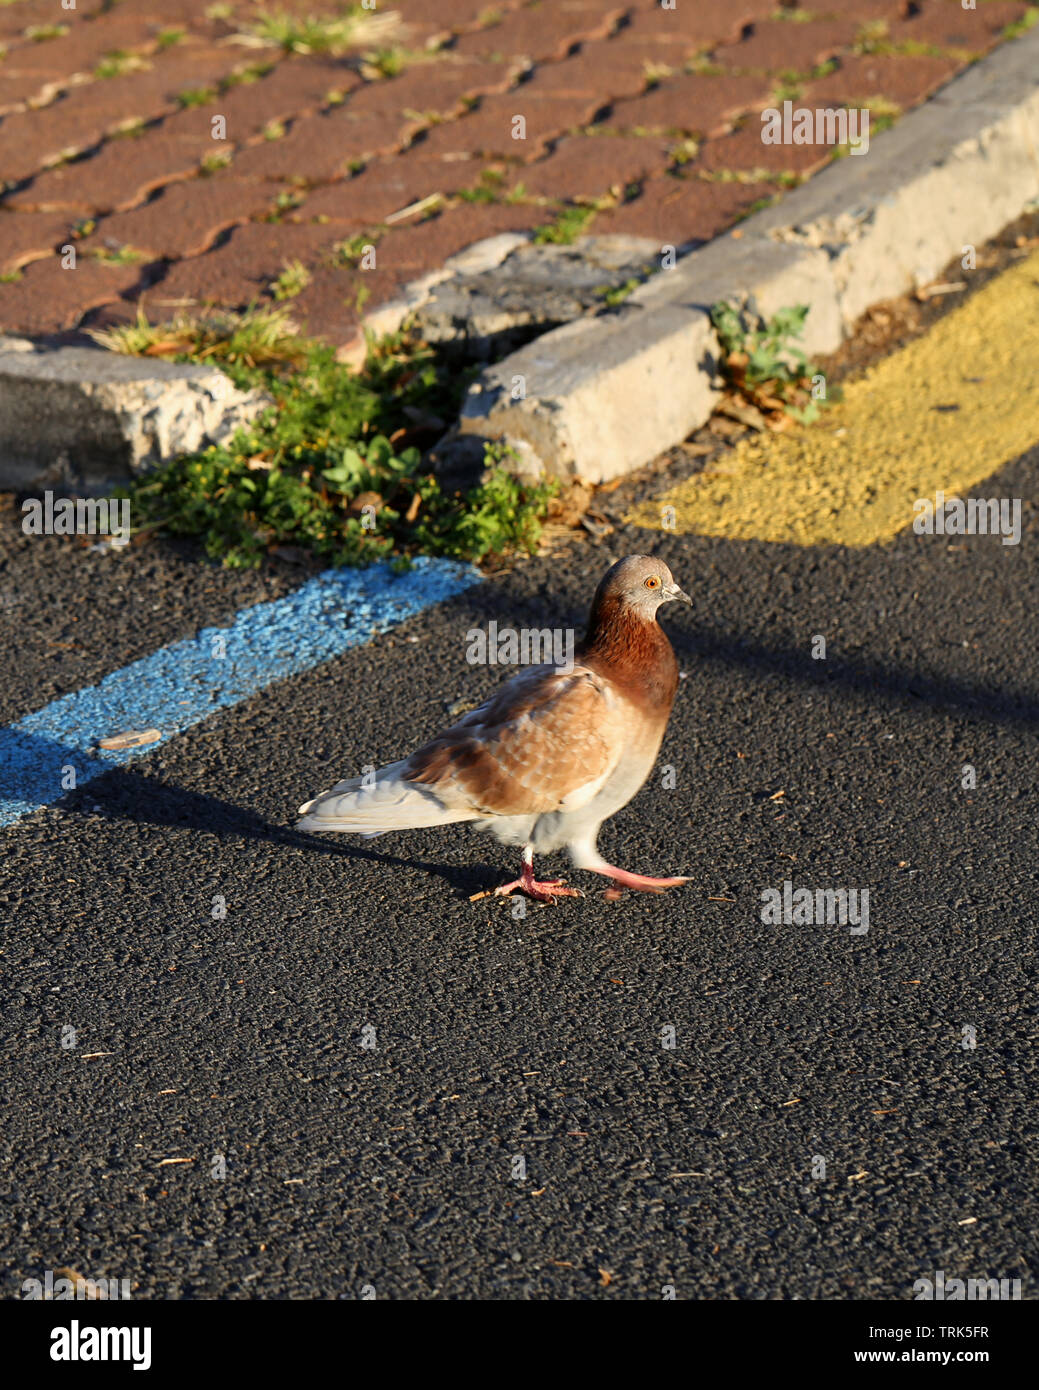 Bianco e Marrone di Pigeon camminando in un parcheggio situato a Funchal, Madeira. La luce del sole crea lunghe e belle ombre. Immagine a colori. Foto Stock